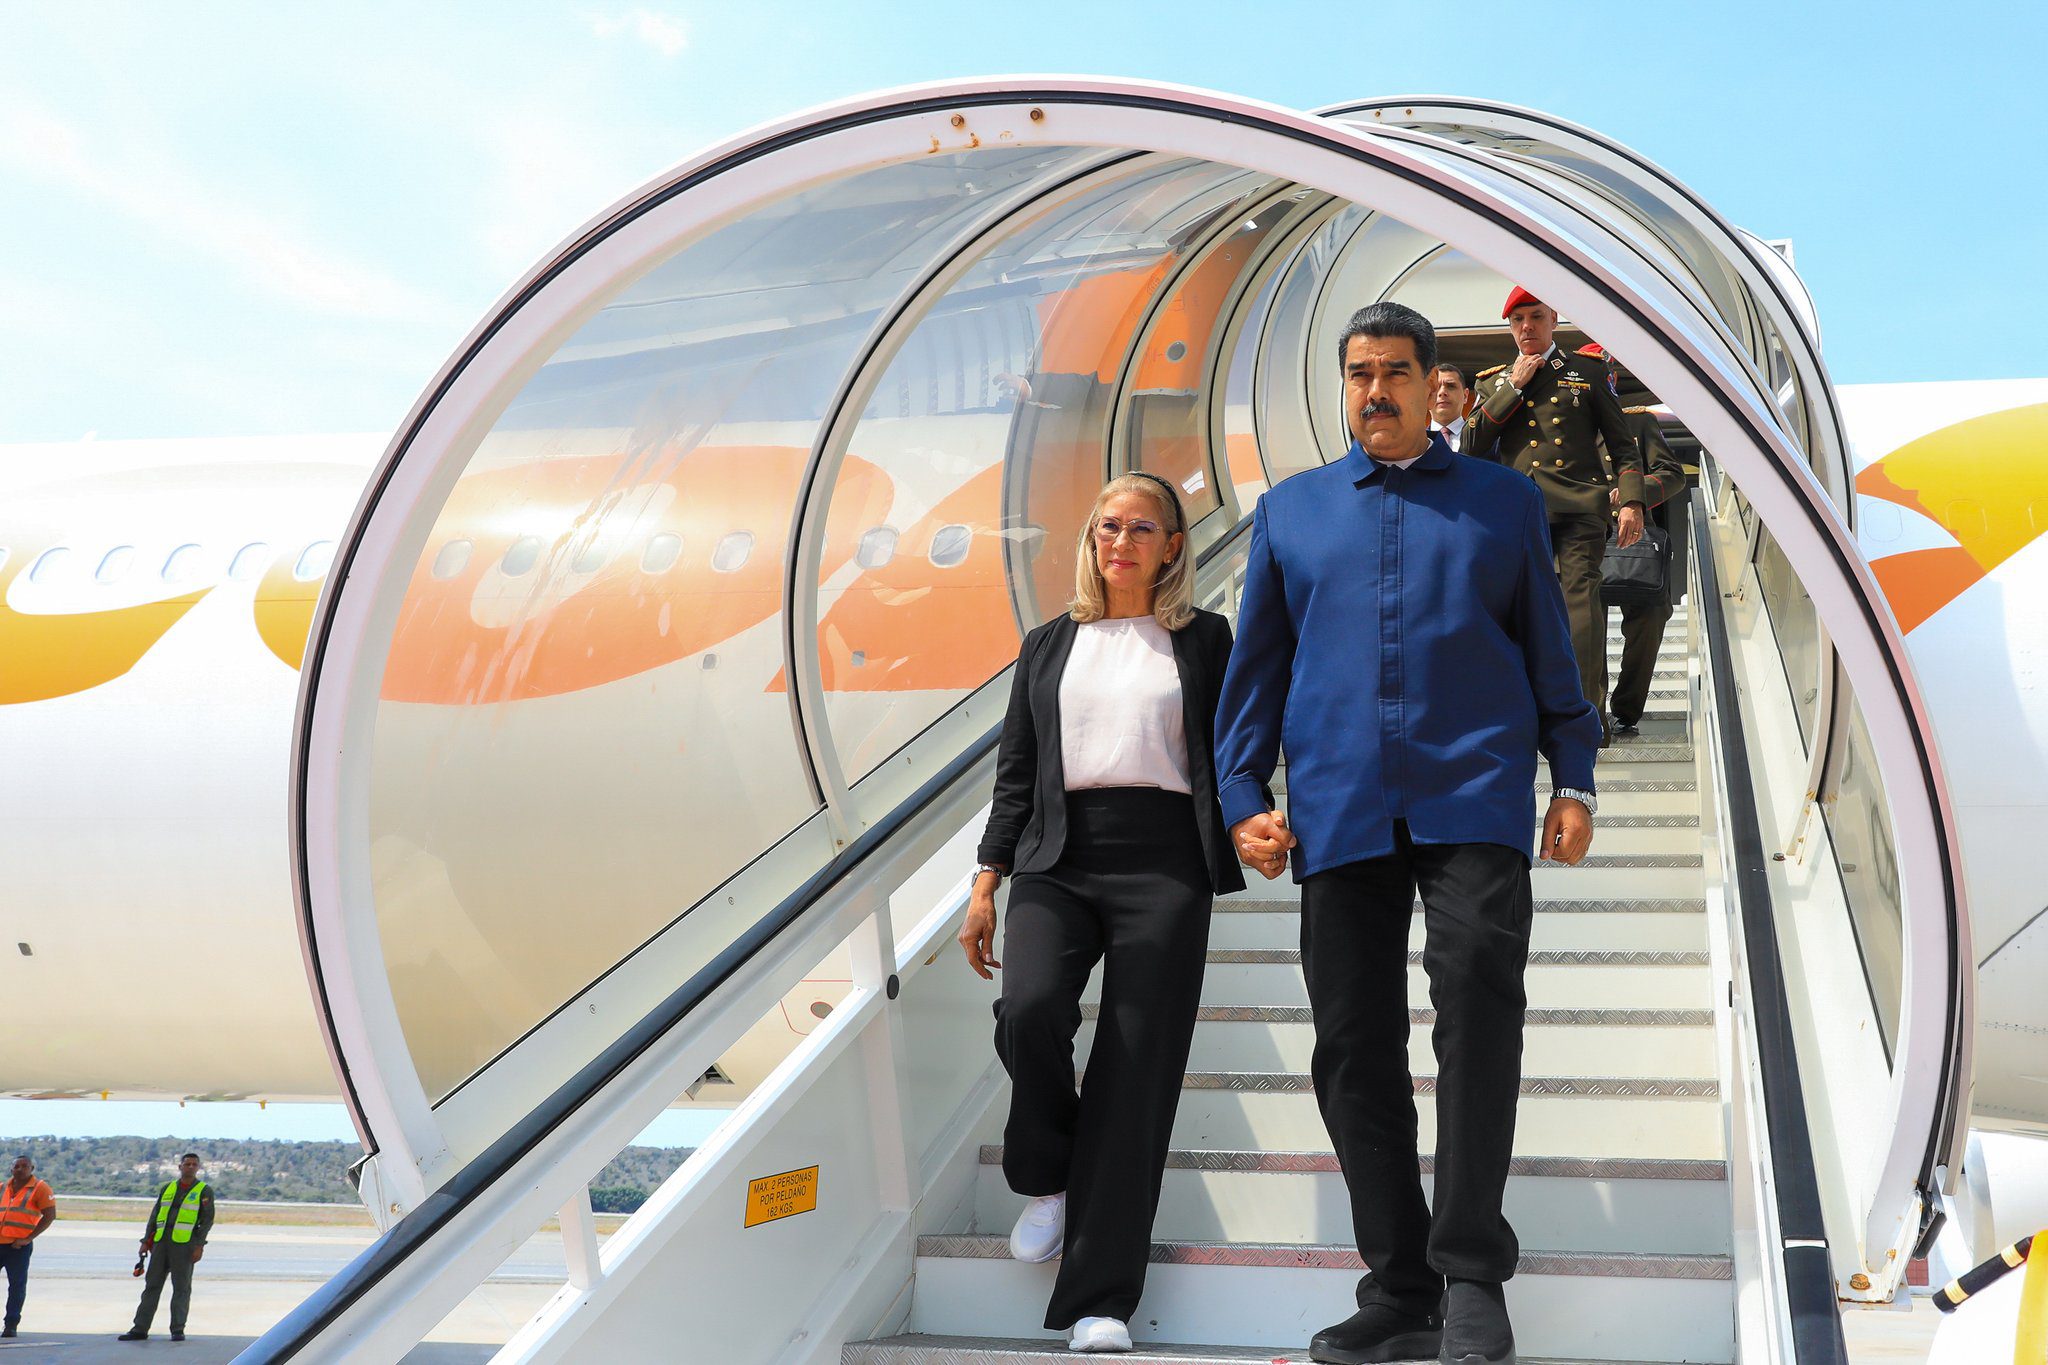 presidente nicolas maduro arriba a venezuela luego de gira por china laverdaddemonagas.com f6qwrn2wiaarp2s